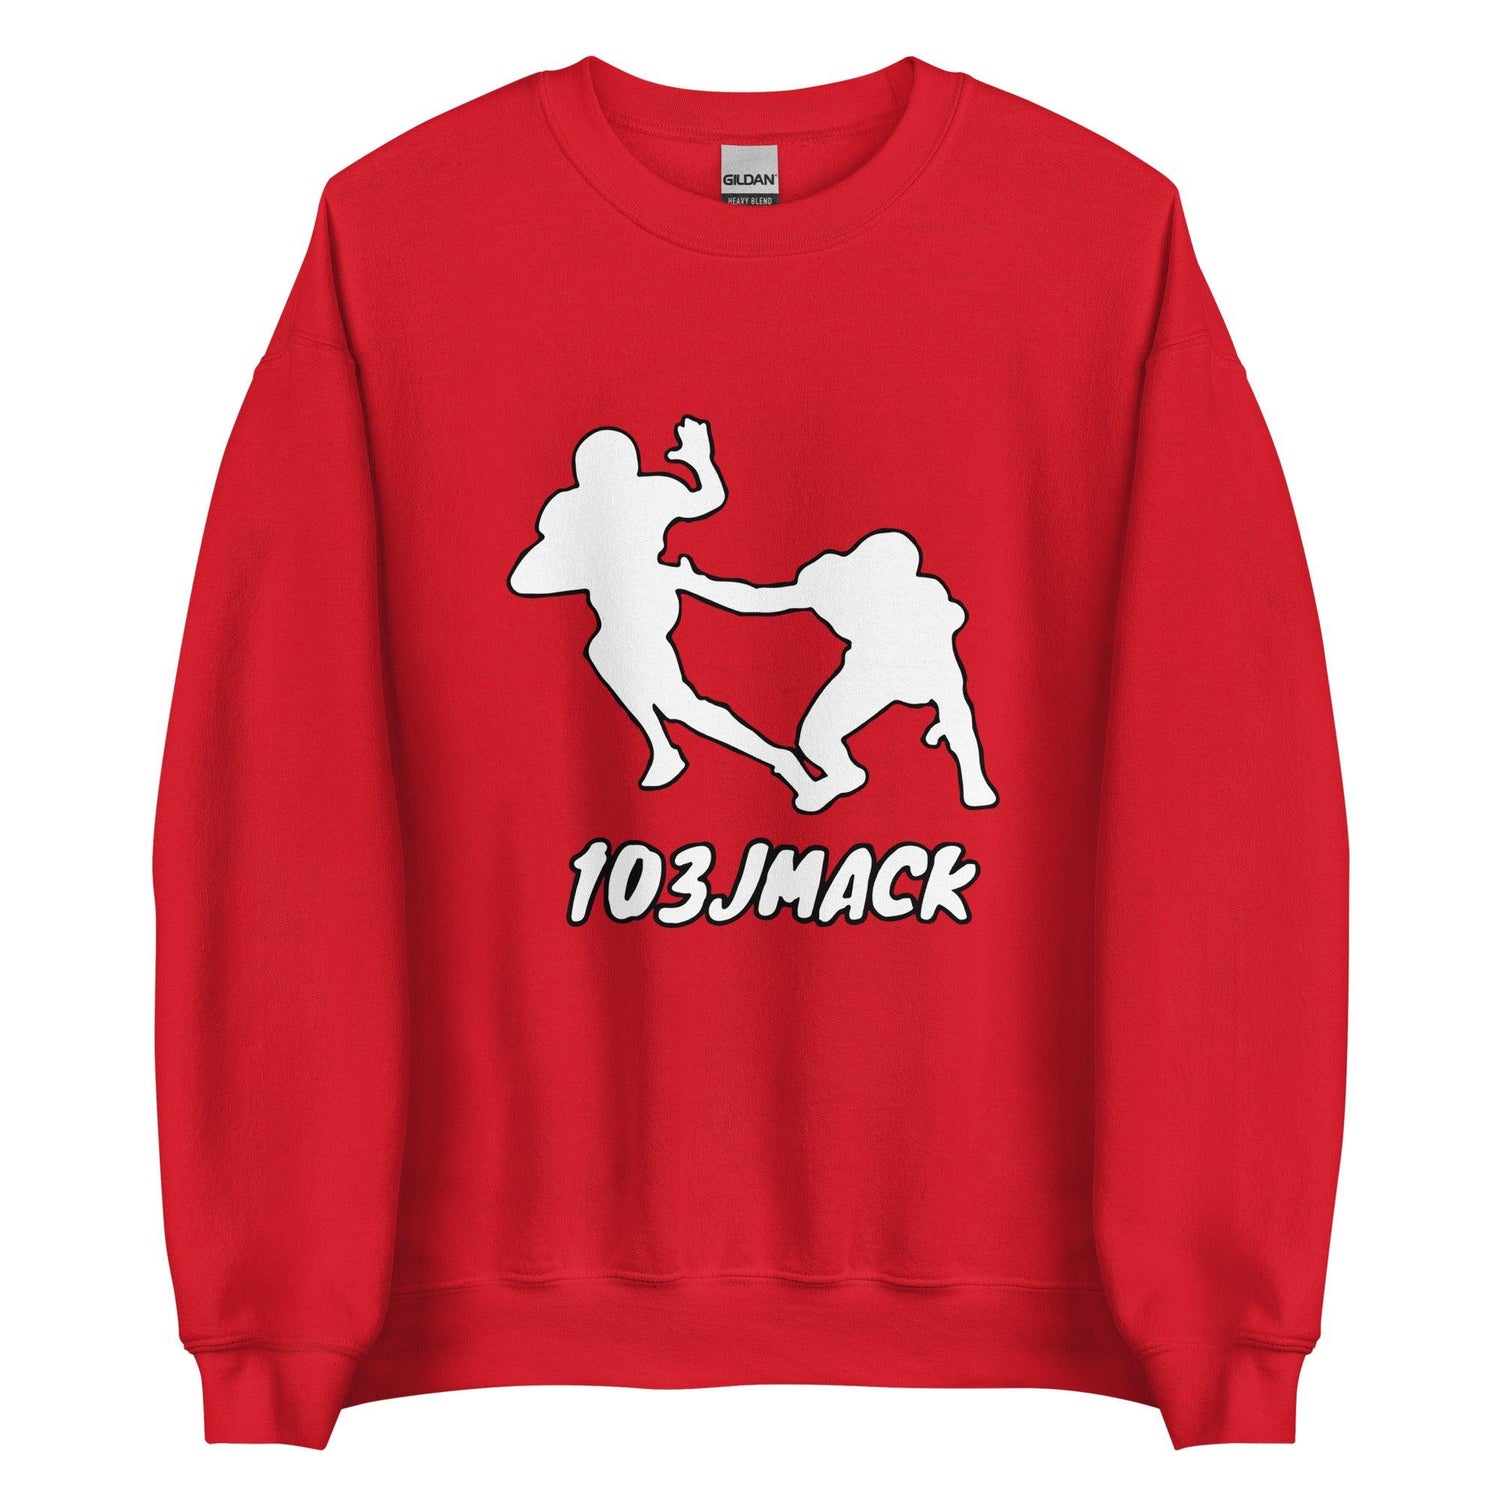 Jaylin Mack "White Out" Sweatshirt - Fan Arch